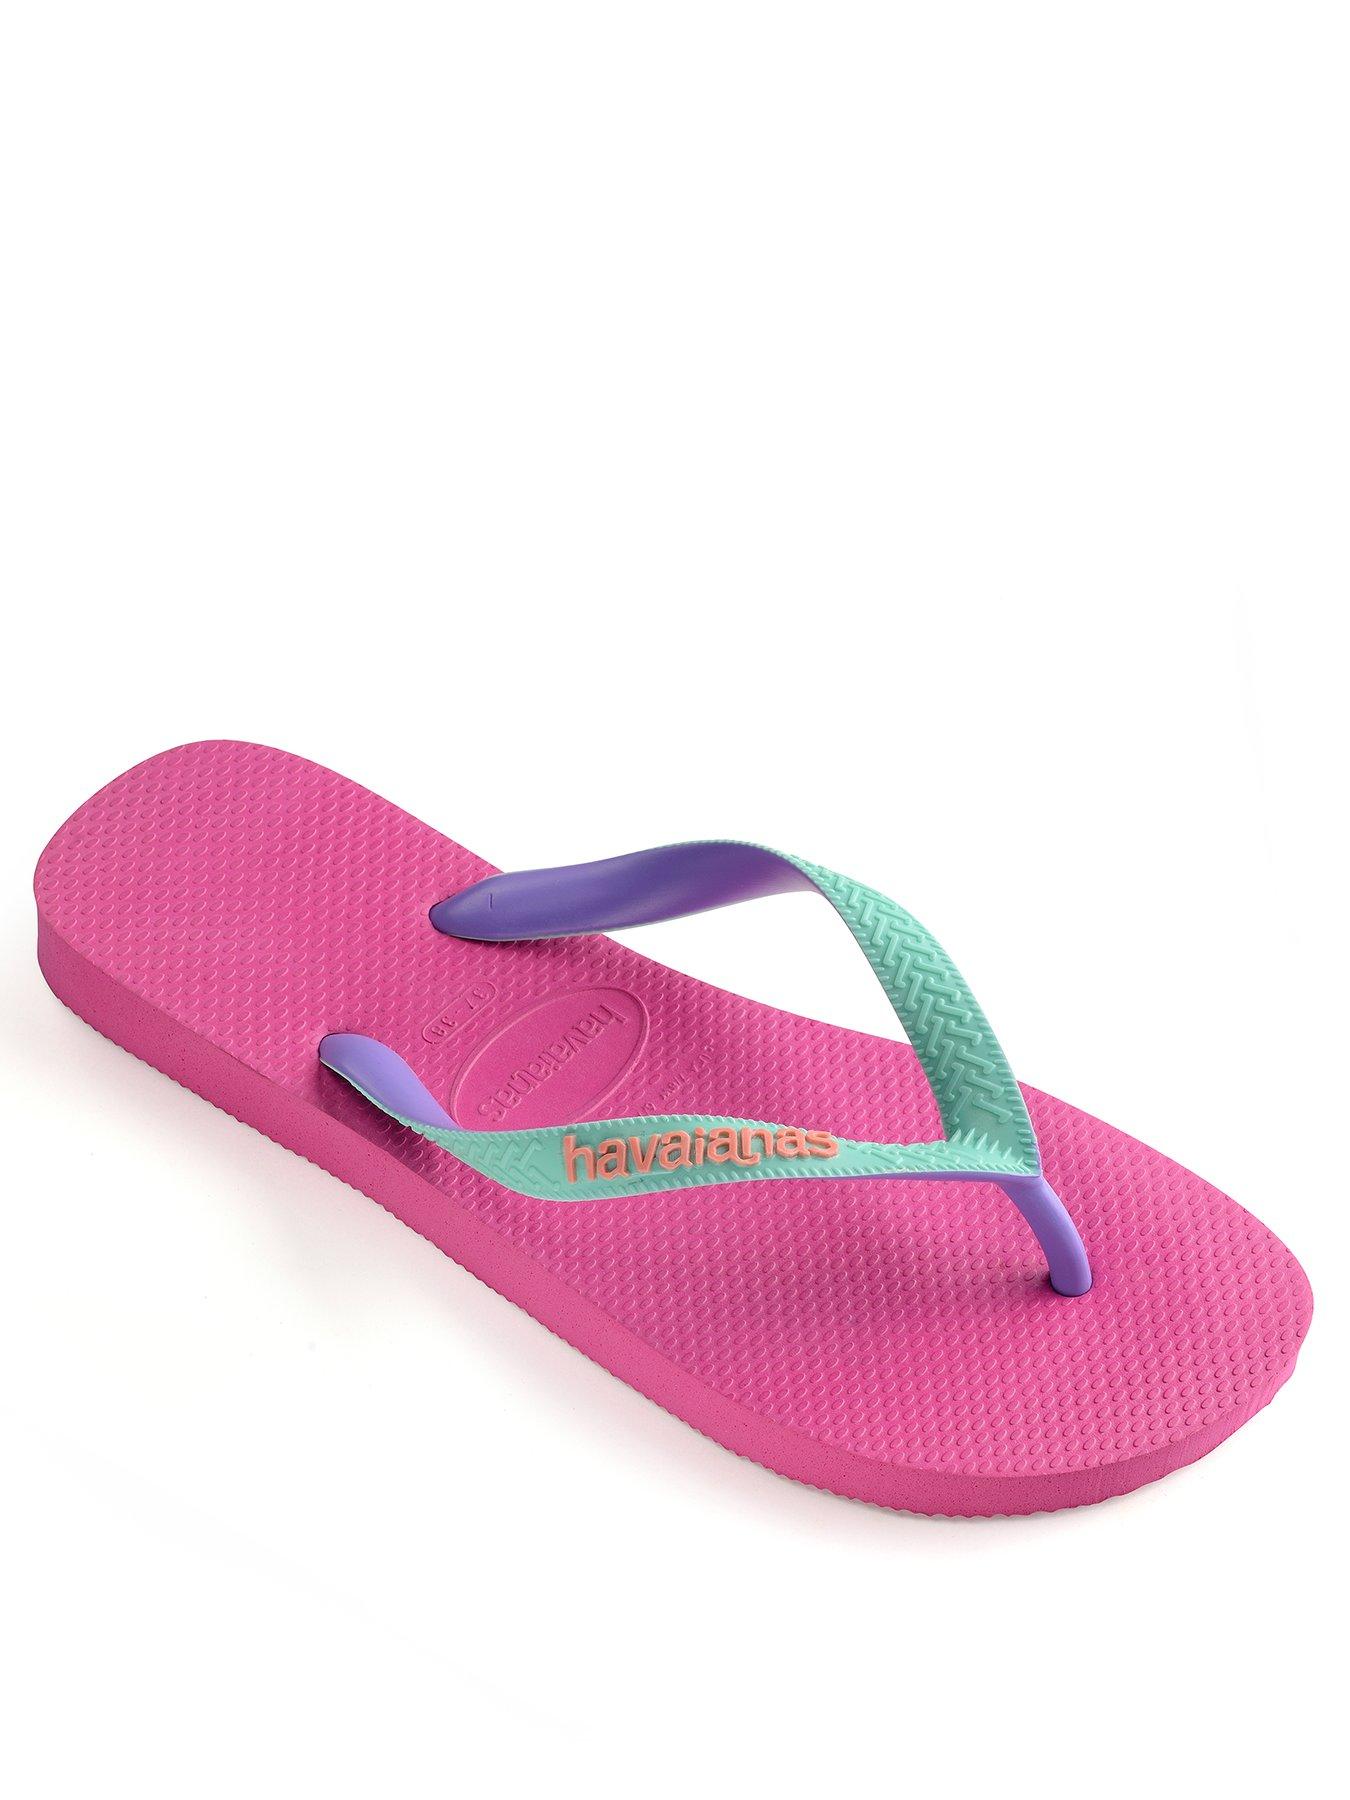 Havaianas Girls Slim Frozen Lavander  Flip Flops Summer Shoes 